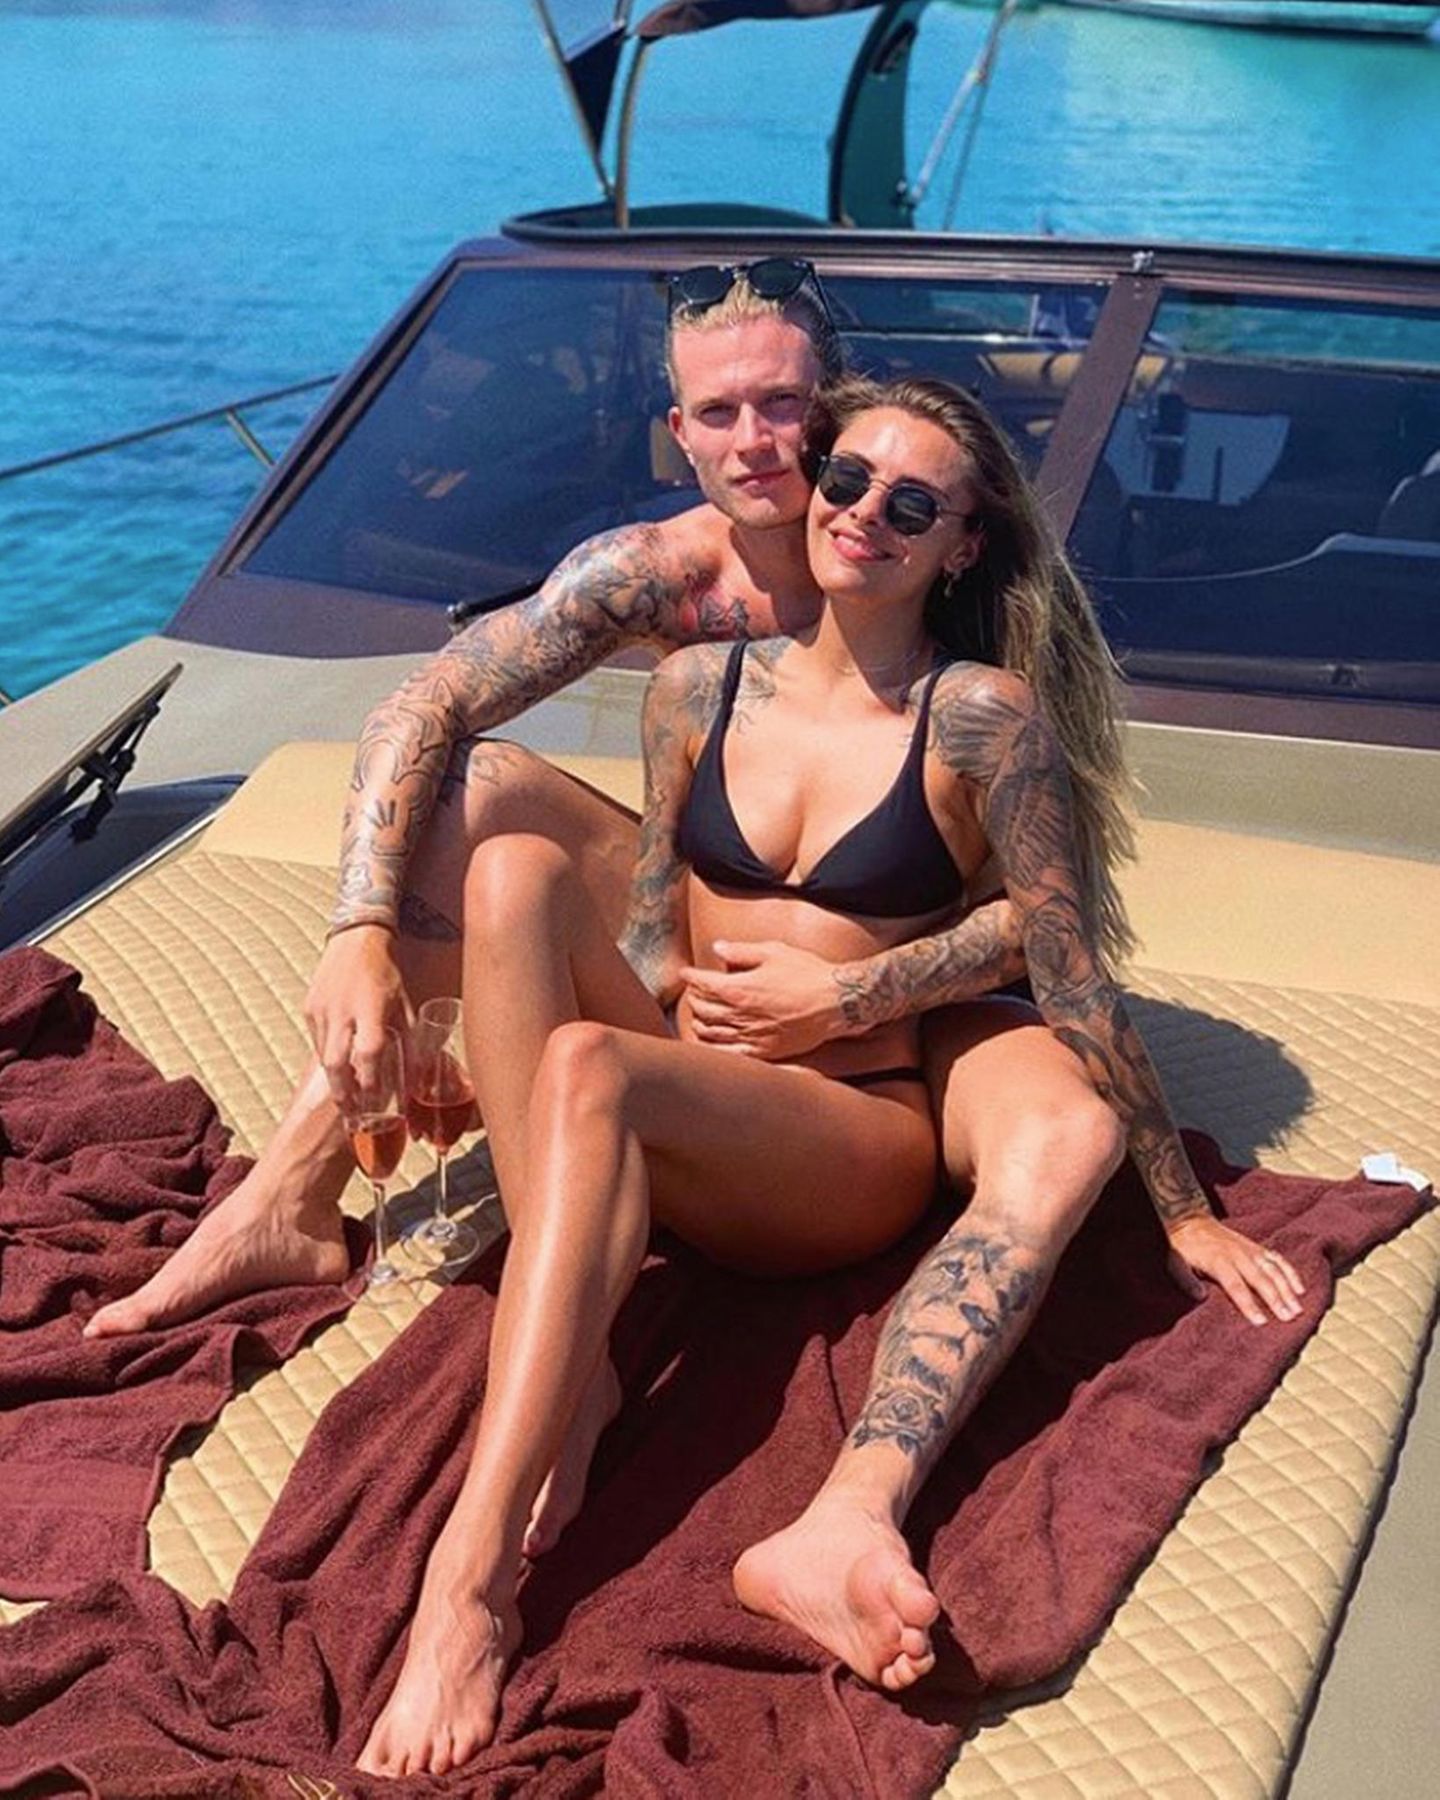 31. Mai 2019  "Twins on holidays" betitelt Sophia Thomalla dieses sonnige Pärchenfoto von sich und ihrem Liebsten Loris Karius. Die beiden Verliebten verbringen derzeit ihren Urlaub auf Mykonos und genießen ihre gemeinsame Zeit auf einem Luxusboot.